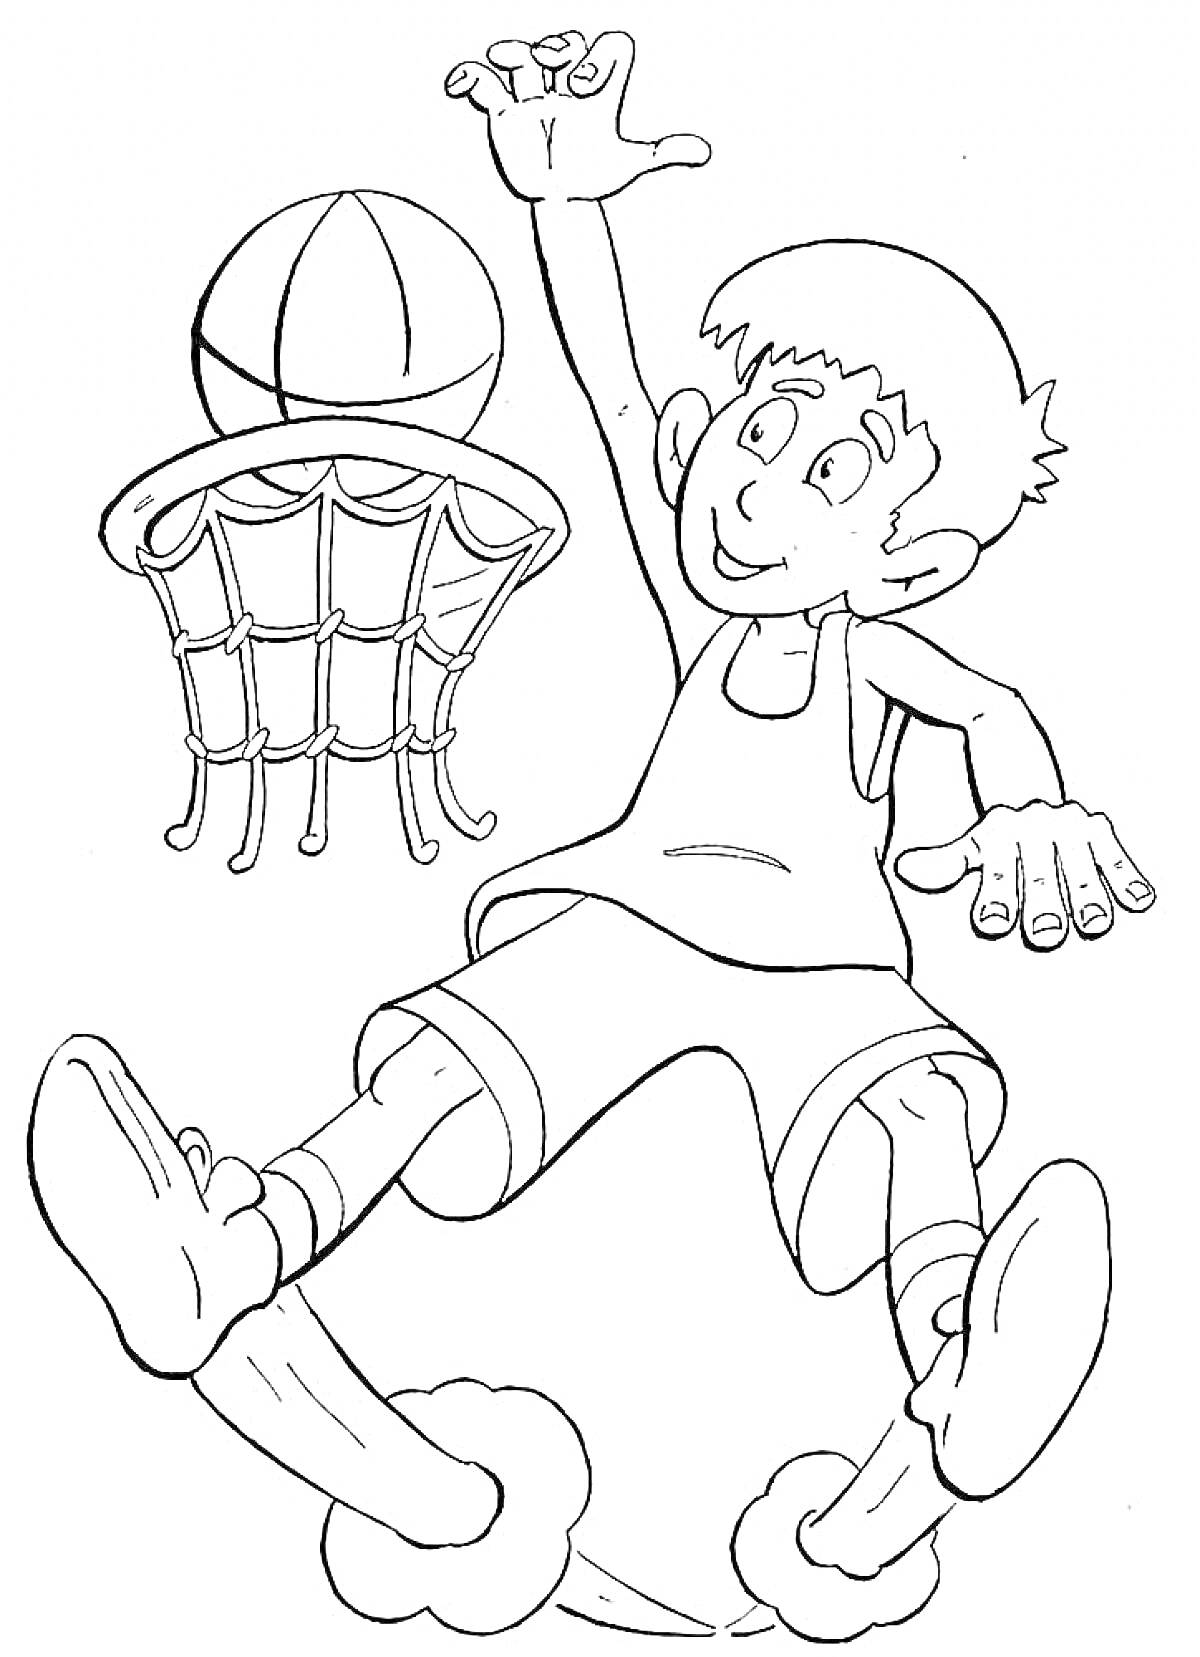 Мальчик, играющий в баскетбол с мячом, корзиной и в спортивной форме